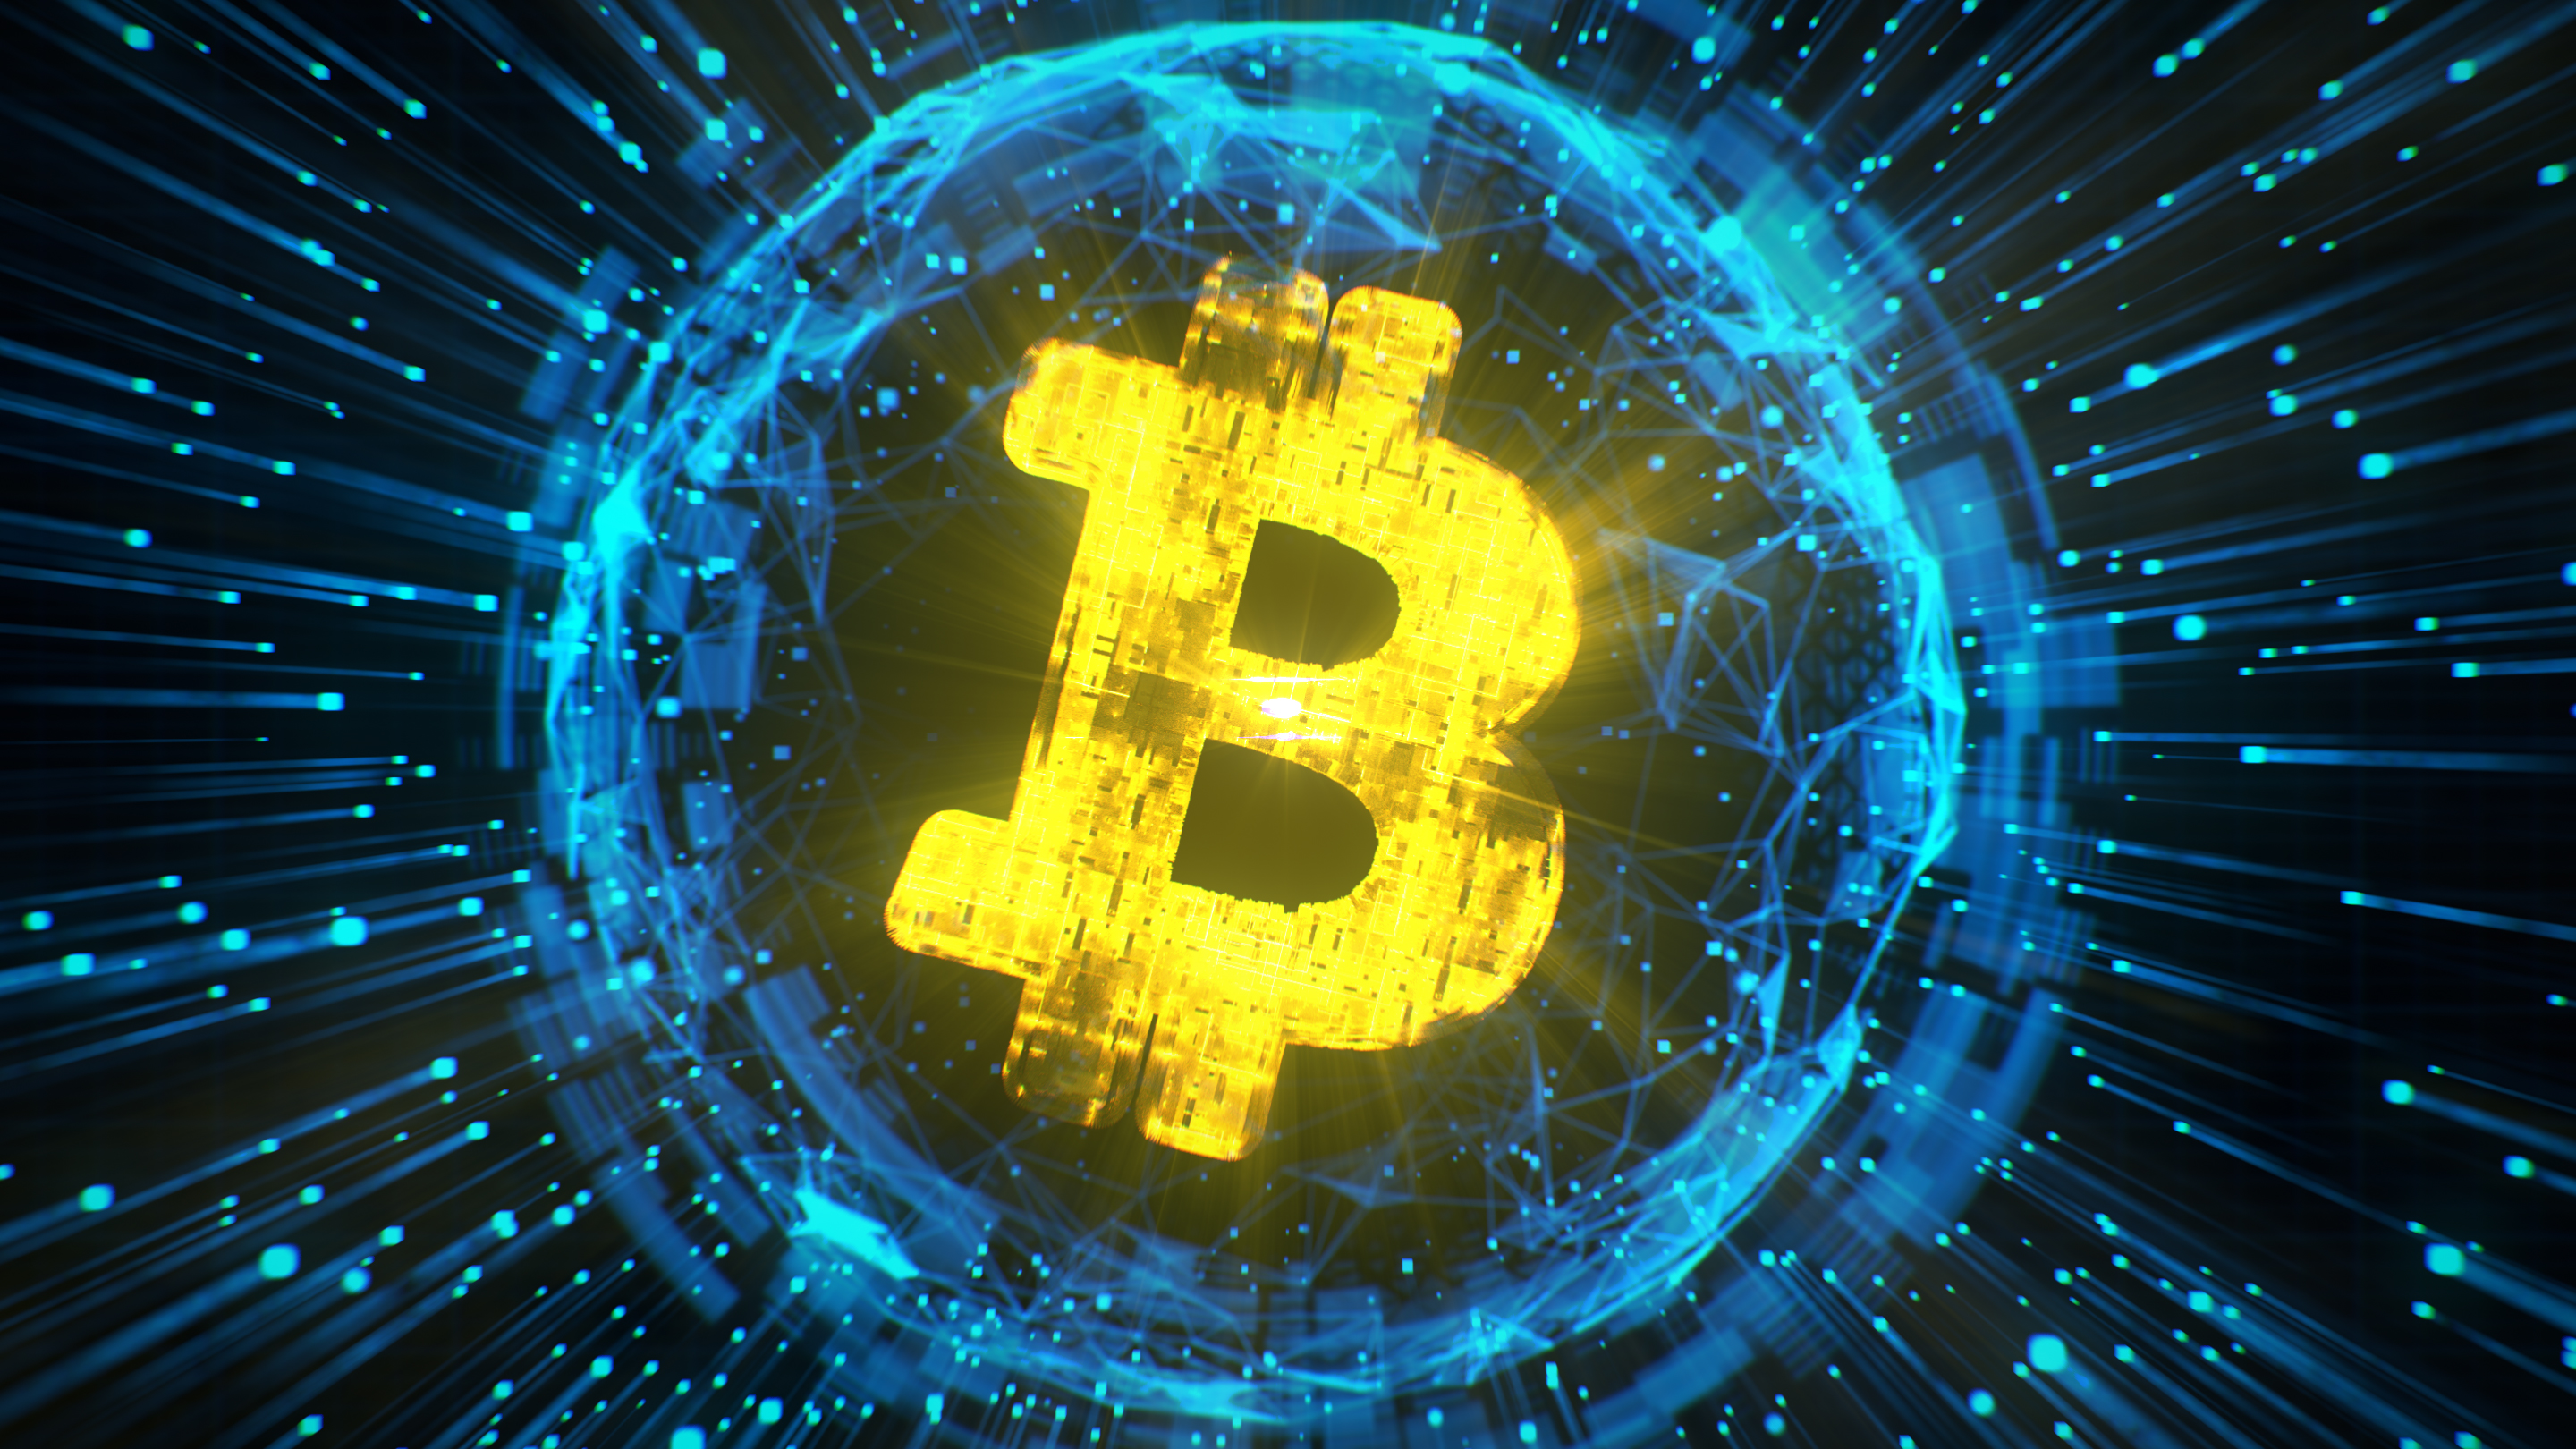 Pro3xplain bitcoins bitcoin wallet vs bitcoin address